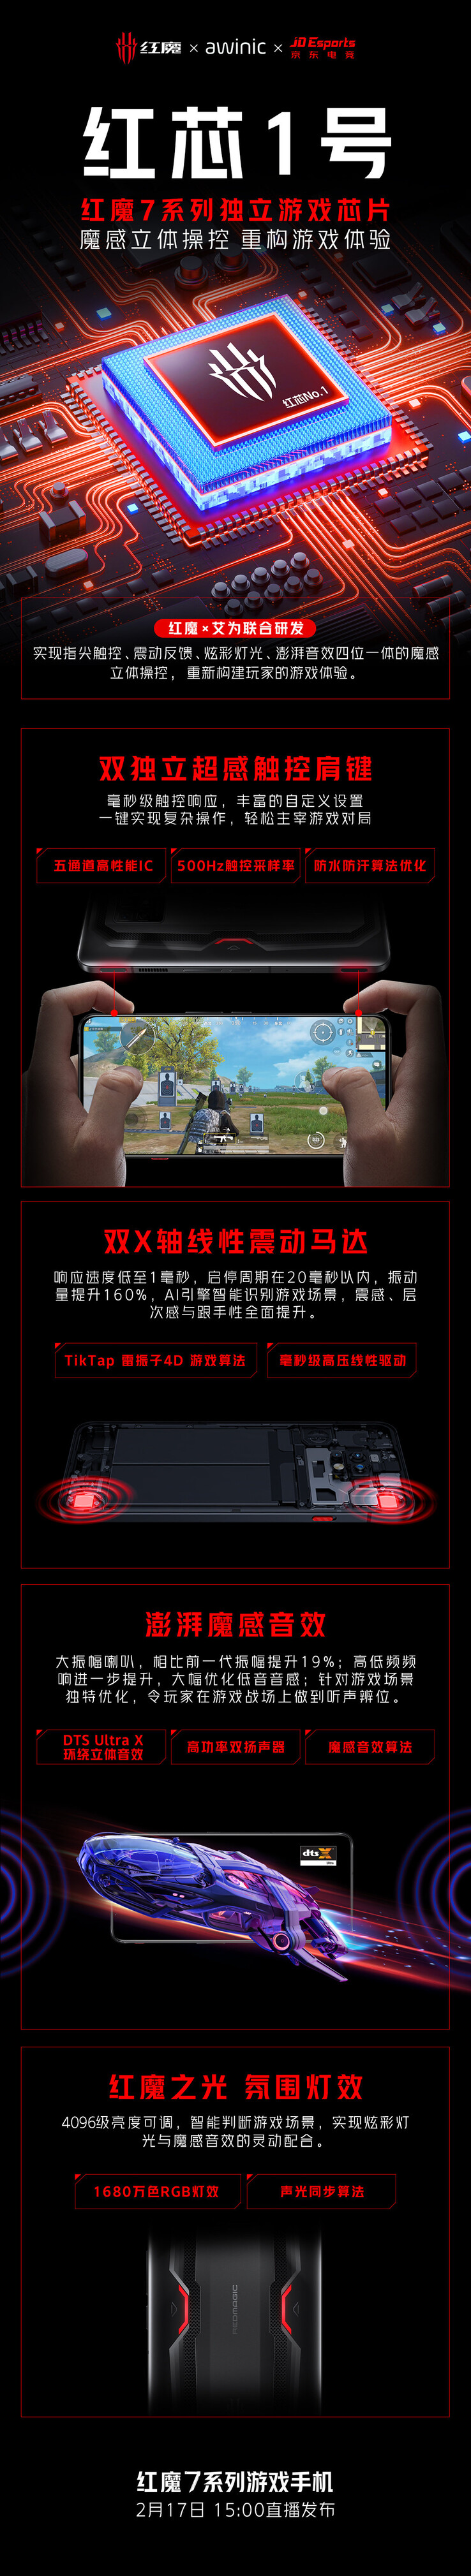 Il Red Core 1 è annunciato come parte della serie RedMagic 7 al suo lancio. (Fonte: RedMagic via Weibo)